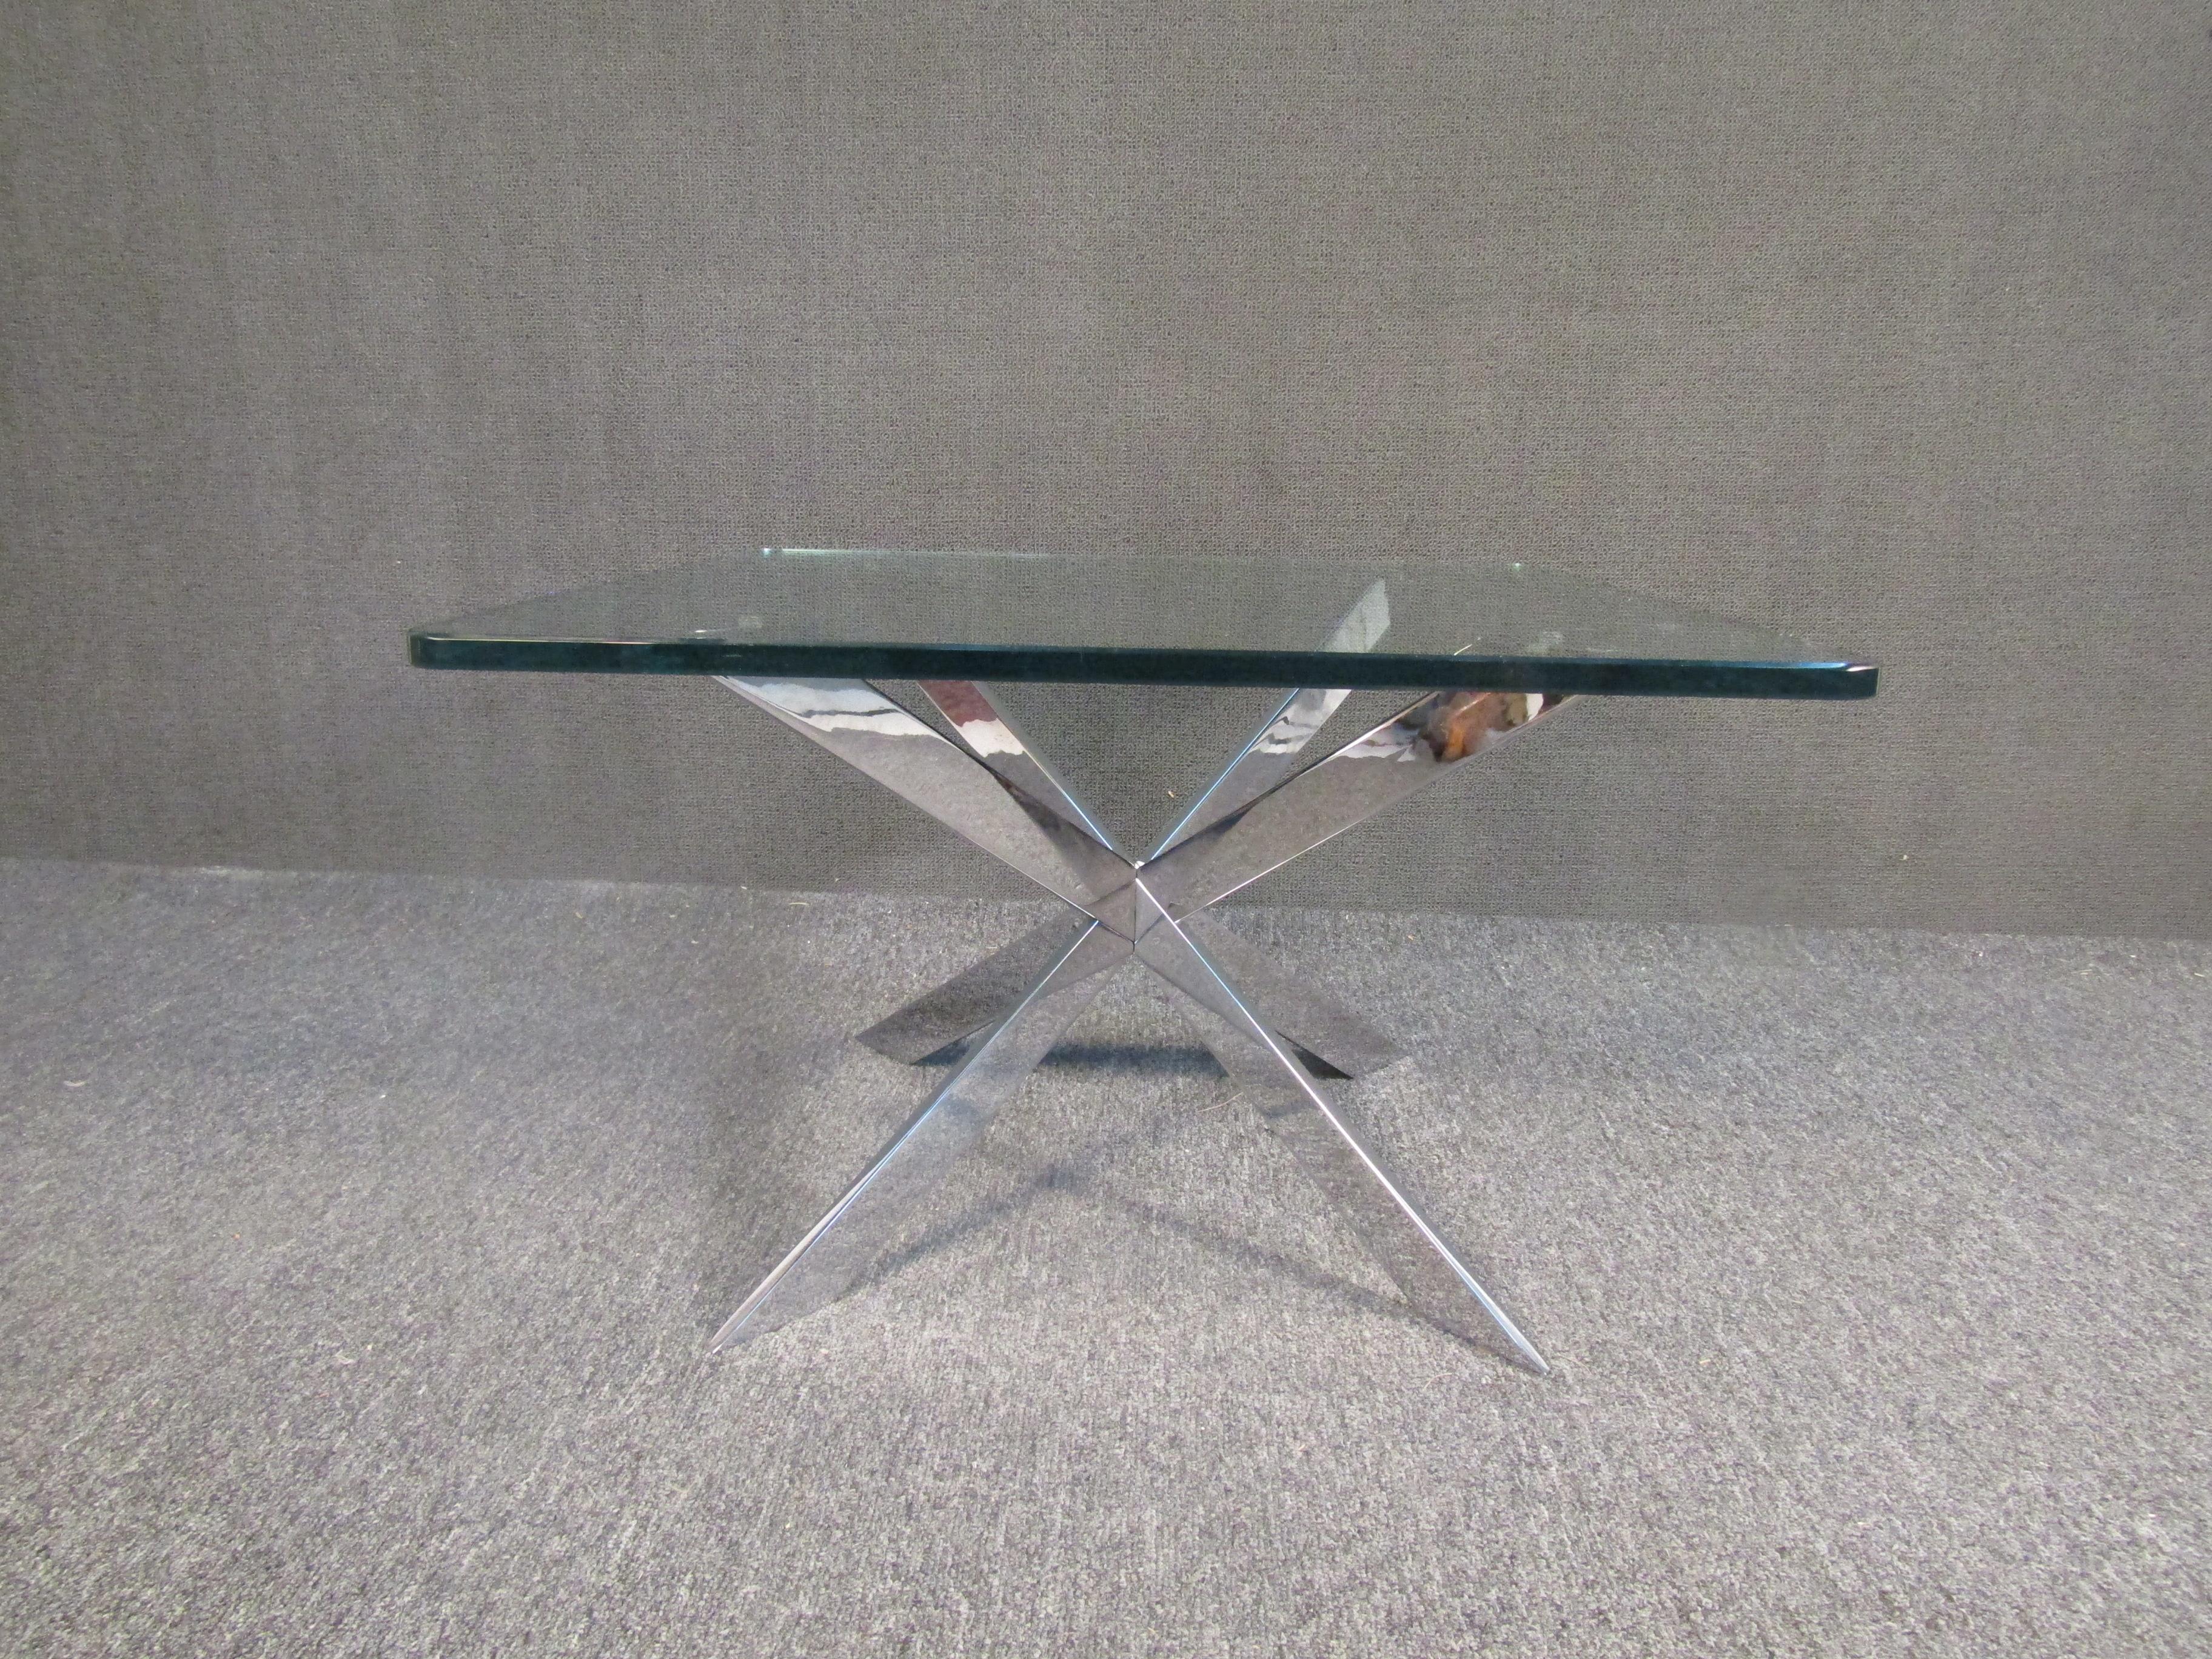 Table d'appoint vintage moderne avec une intéressante base géométrique chromée et un plateau en verre épais. Cette table attire l'attention tout en étant facile à associer à un environnement plus coloré. Veuillez confirmer la localisation de l'objet